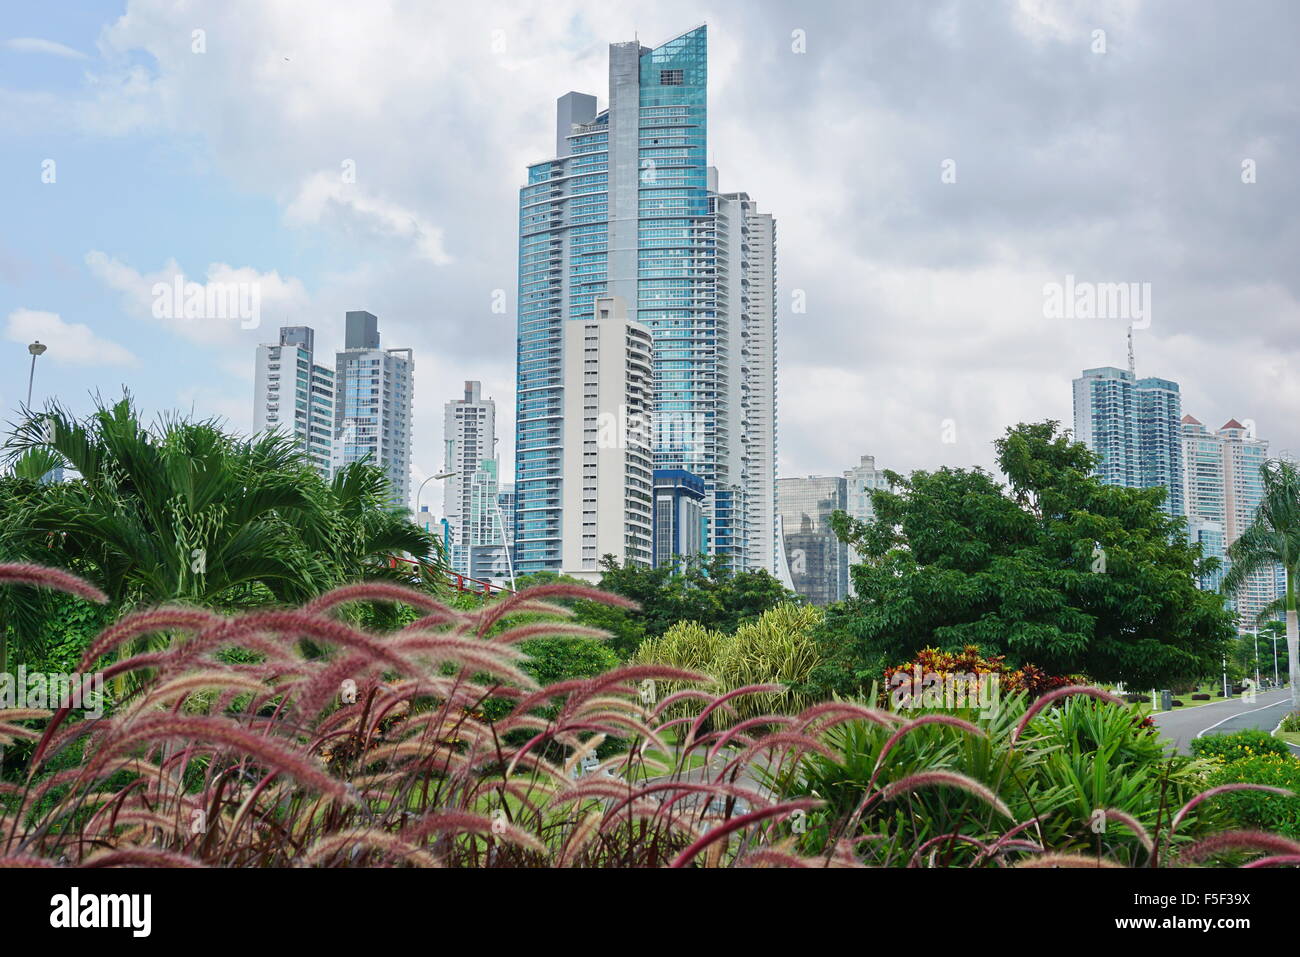 Grattacieli con cielo nuvoloso e piante in primo piano, Panama City, Panama America Centrale Foto Stock